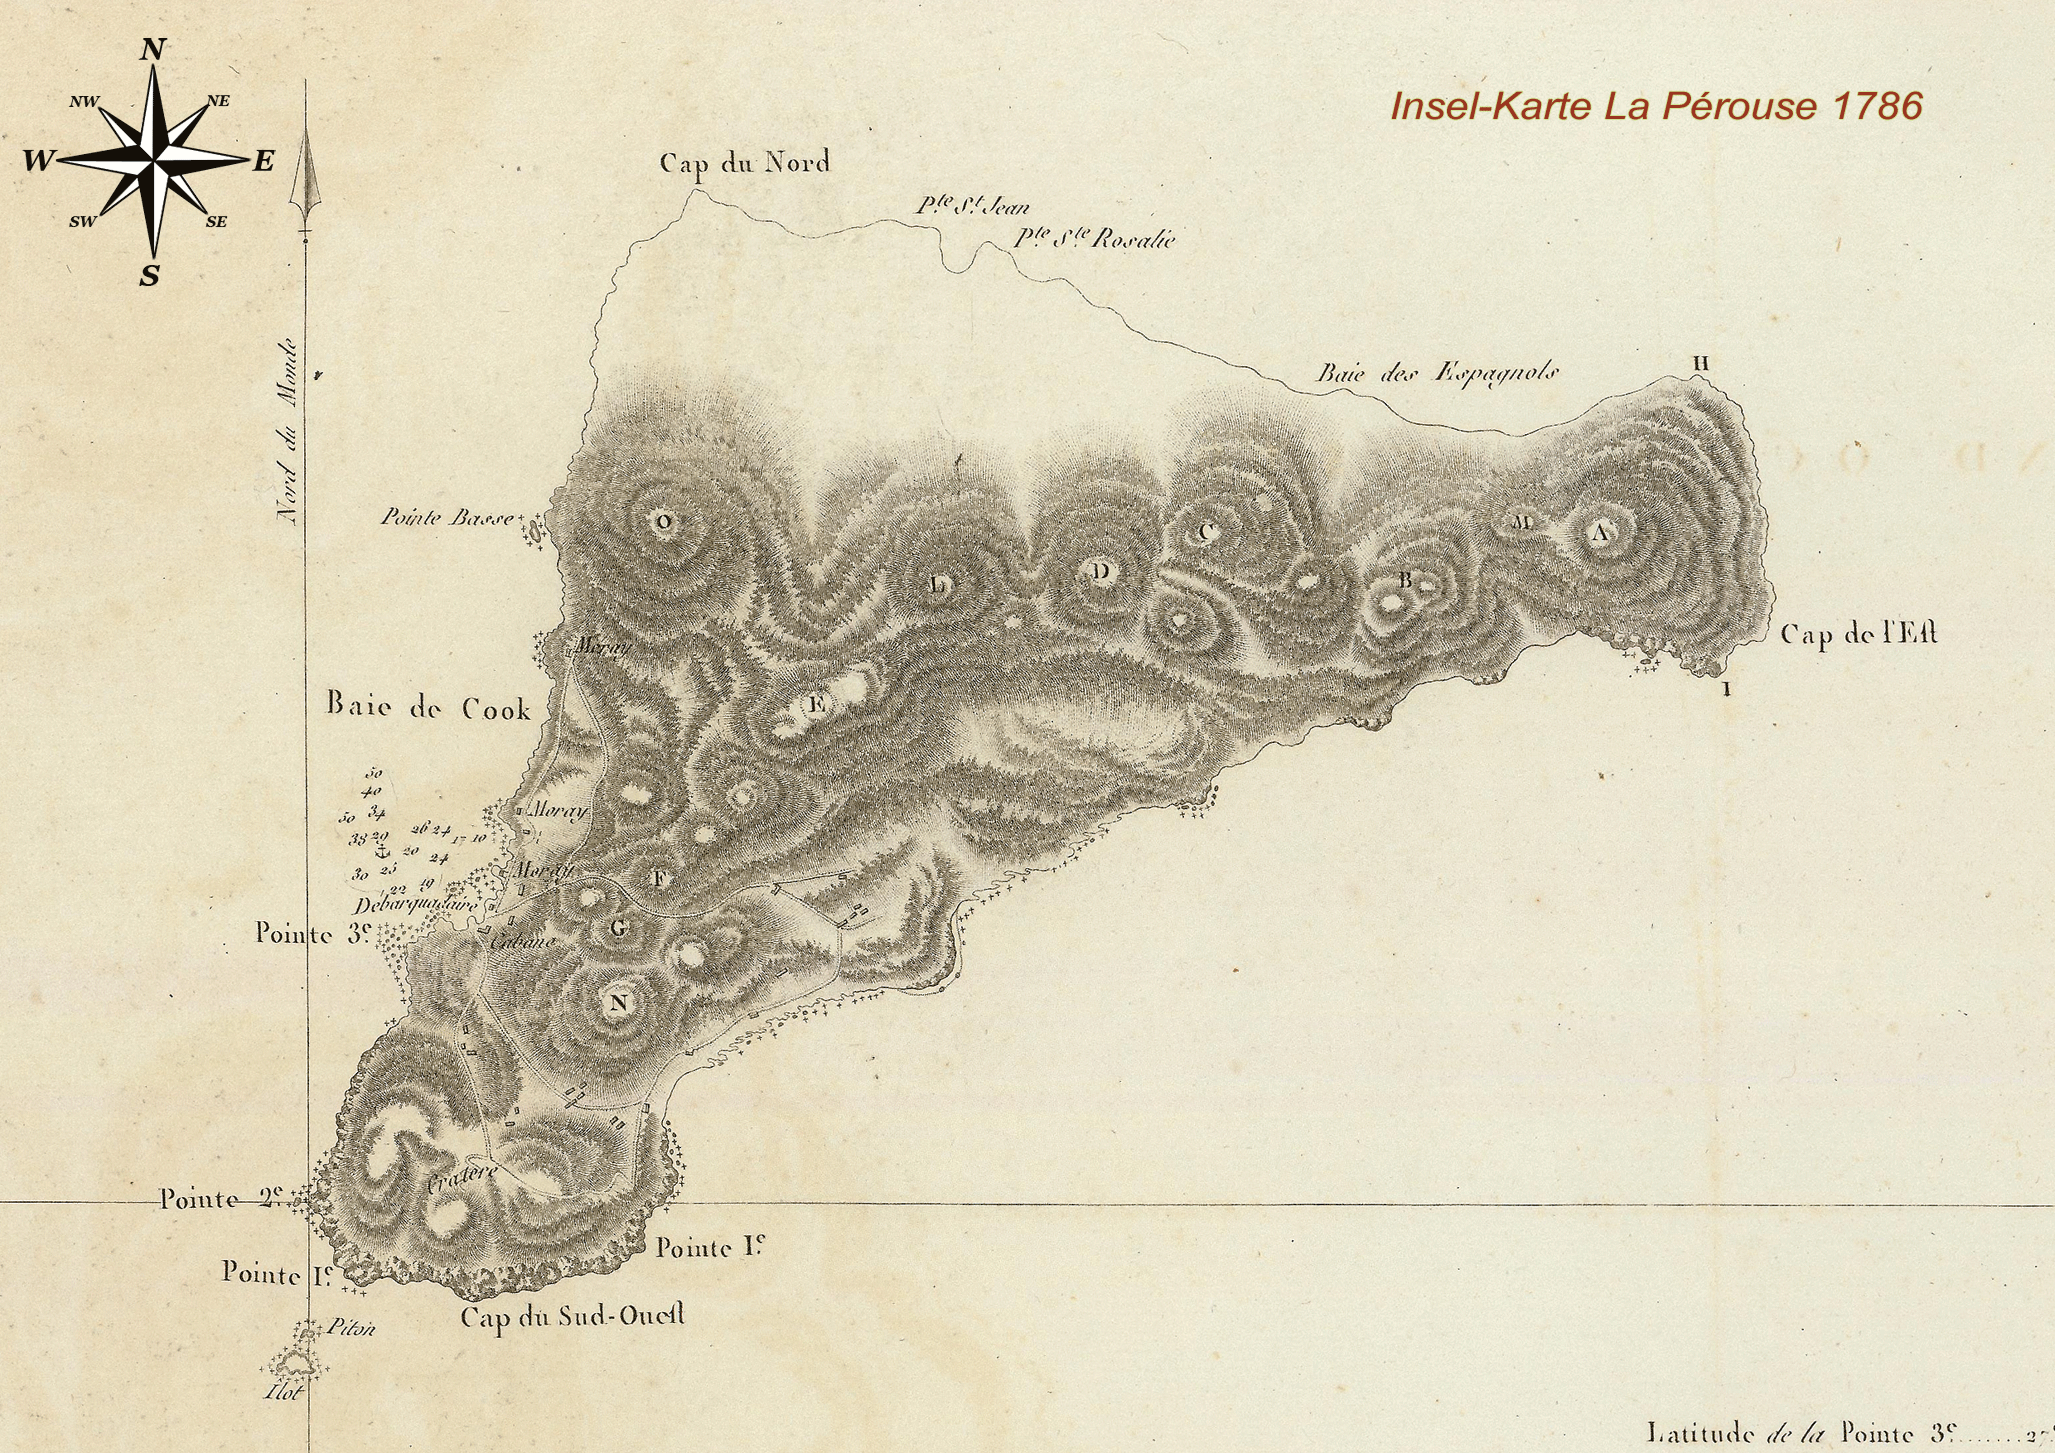 Karte von der Osterinsel aus dem Jahre 1786 von La Pérouse